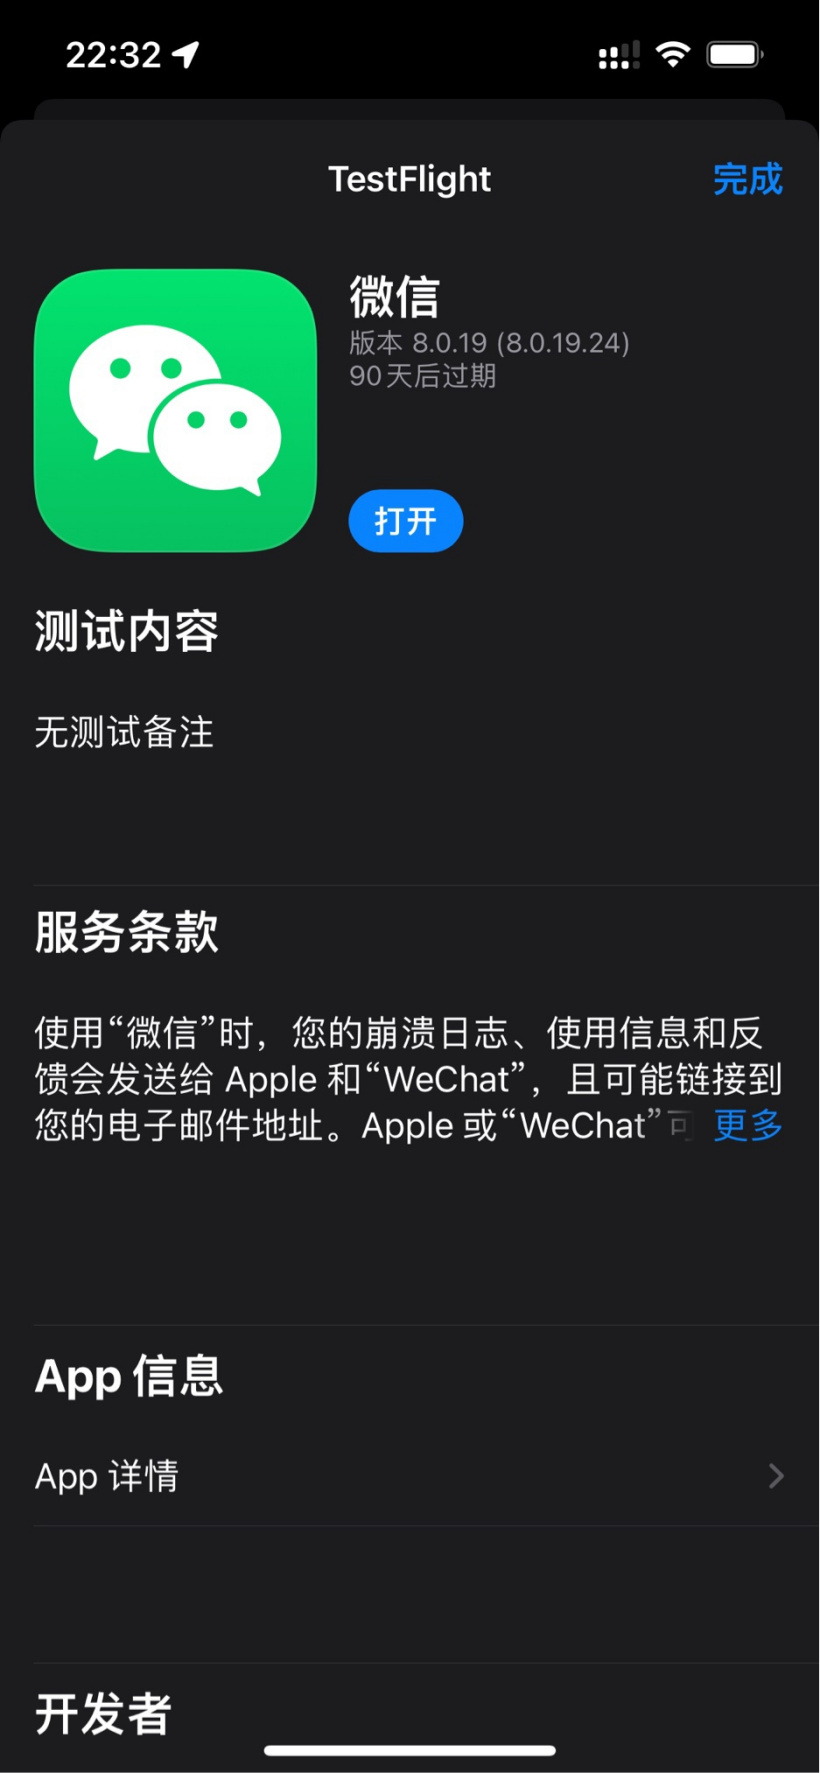 微信发布 iOS 版 8.0.19 内测版更新